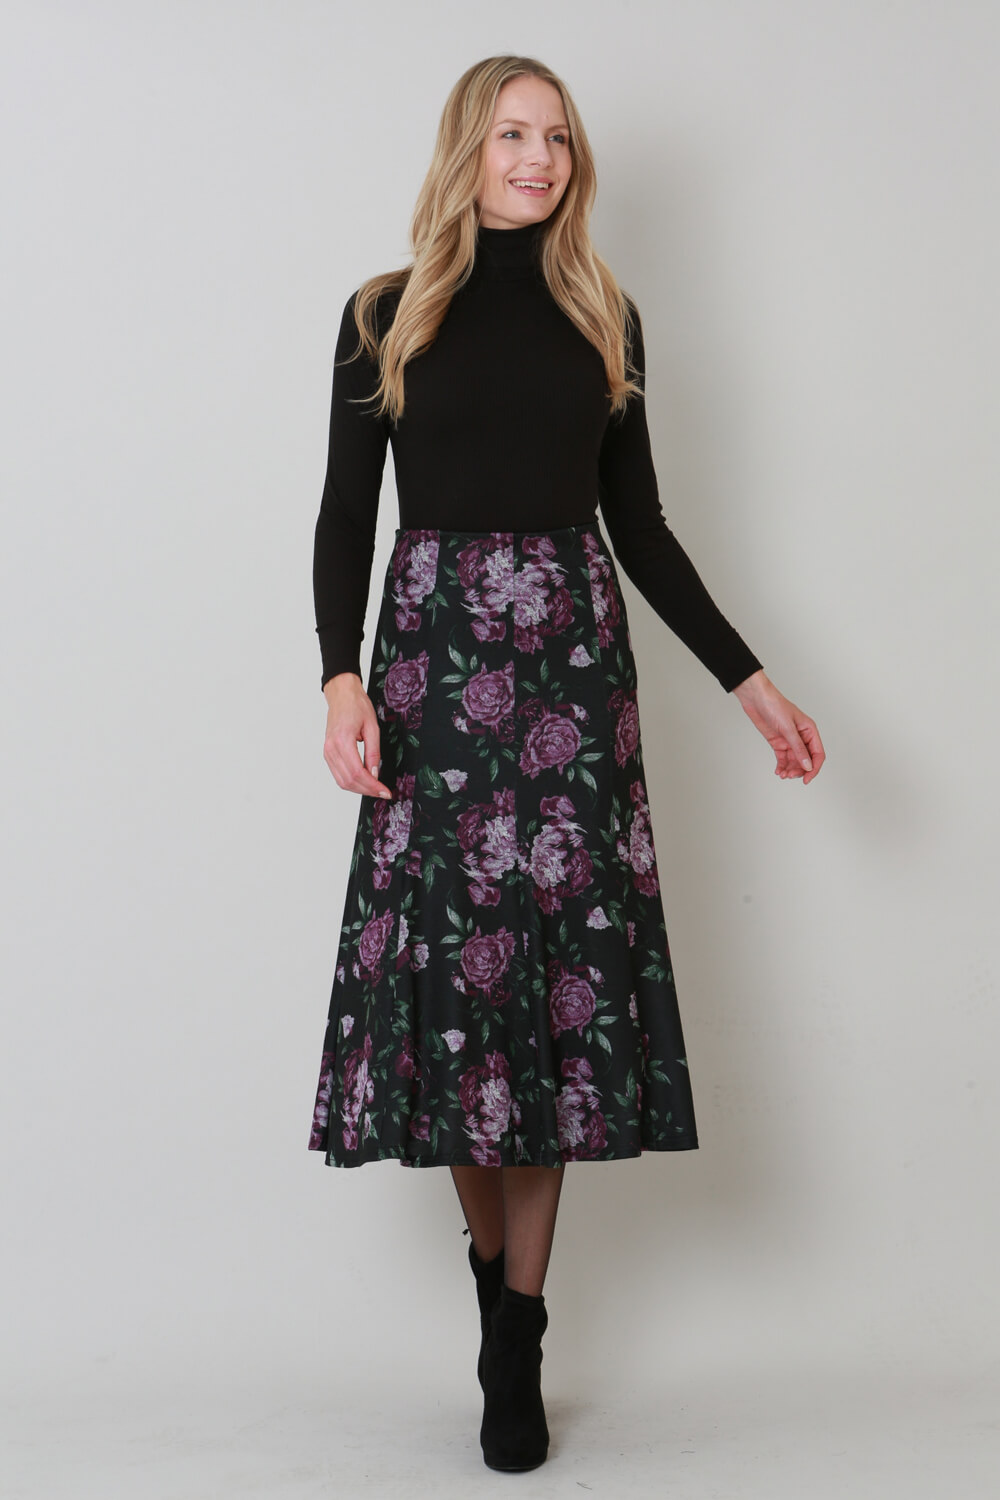 Plum Julianna Floral Print Midi Skirt, Image 3 of 3